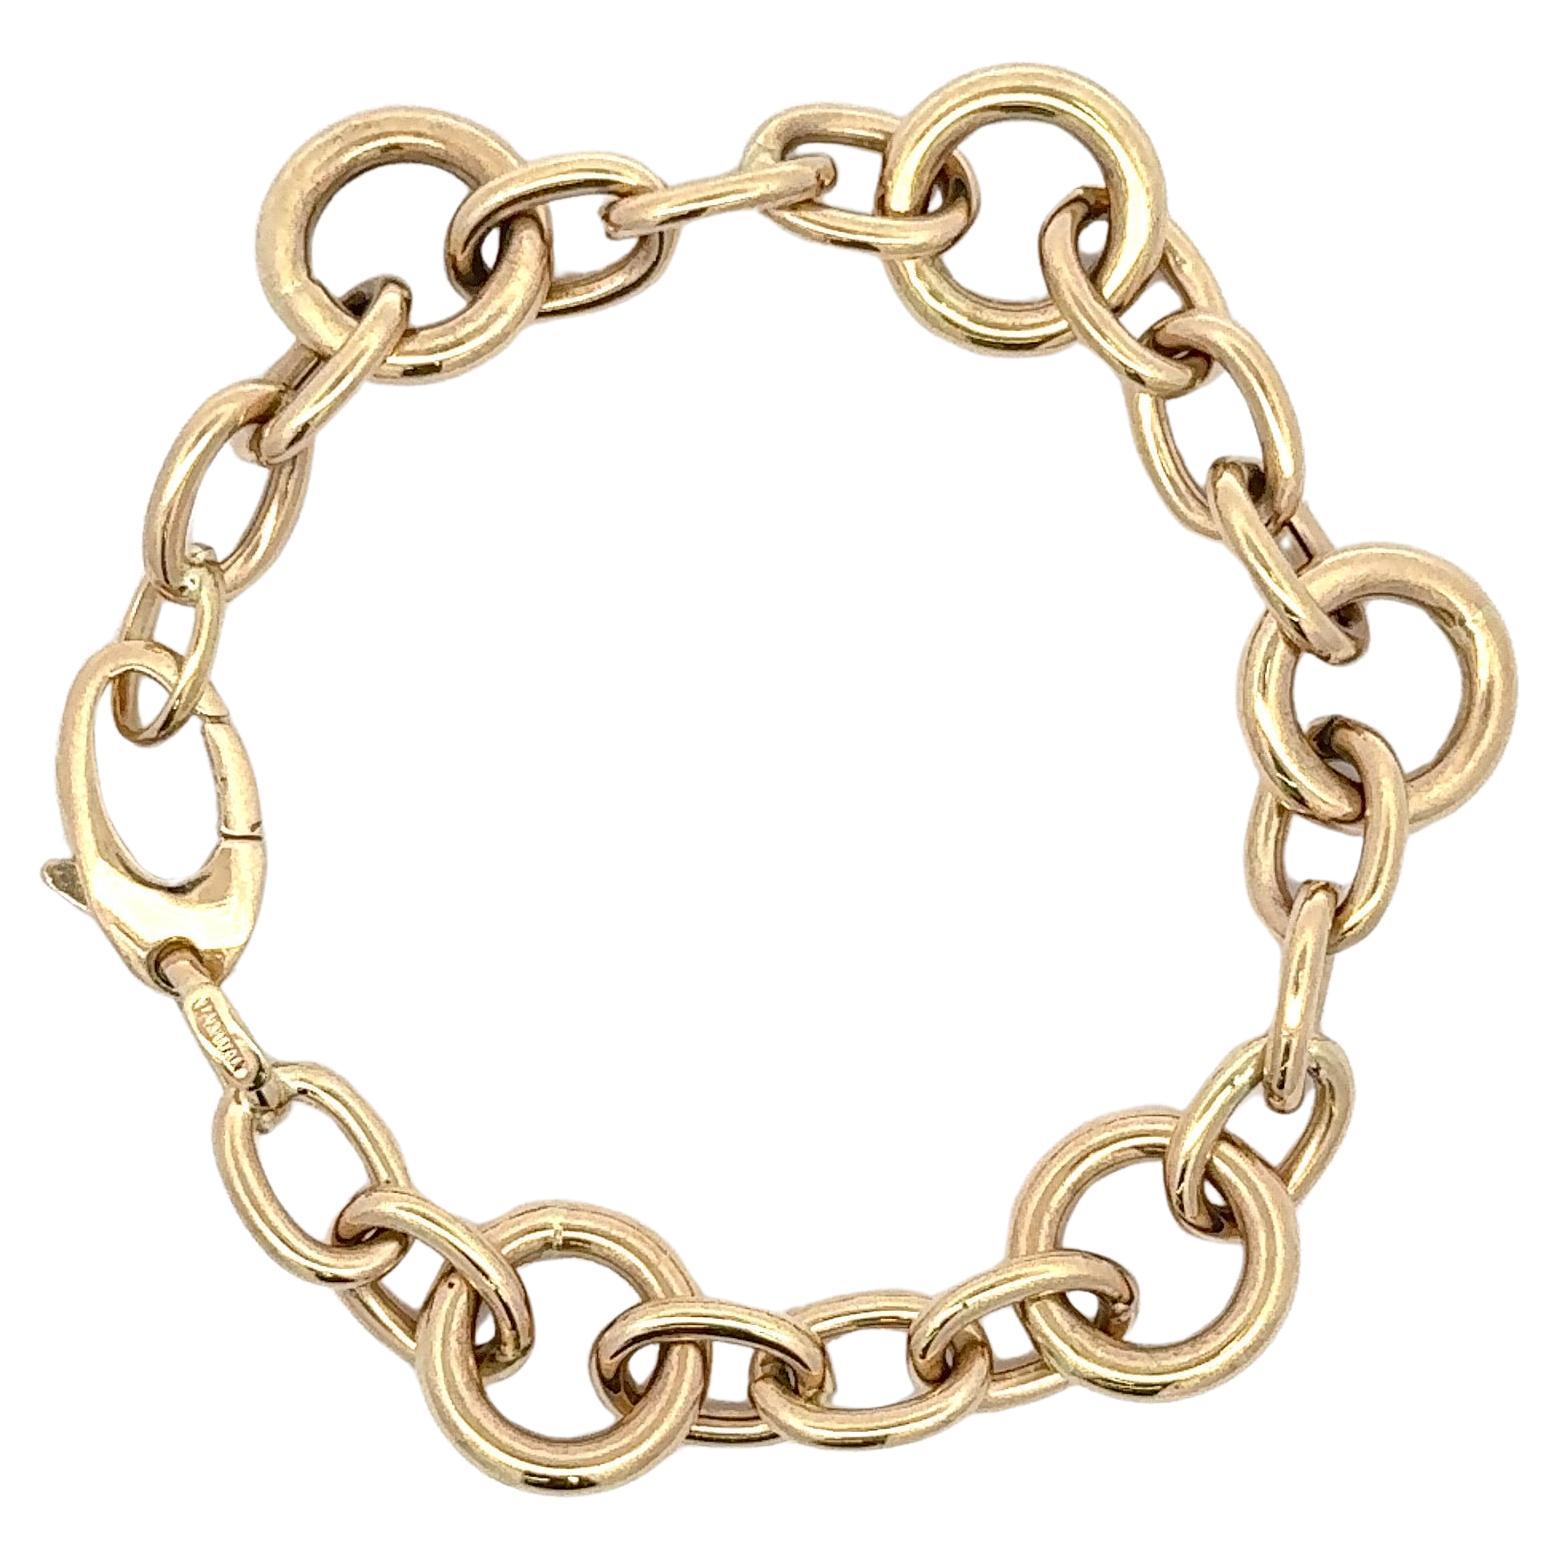 Bracelet italien en or jaune 14 carats composé de trois maillons ovales et d'un grand maillon rond pesant 9,6 grammes. 
Maillon rond : 13,4 mm
Ovale : 11 mm x 8 mm